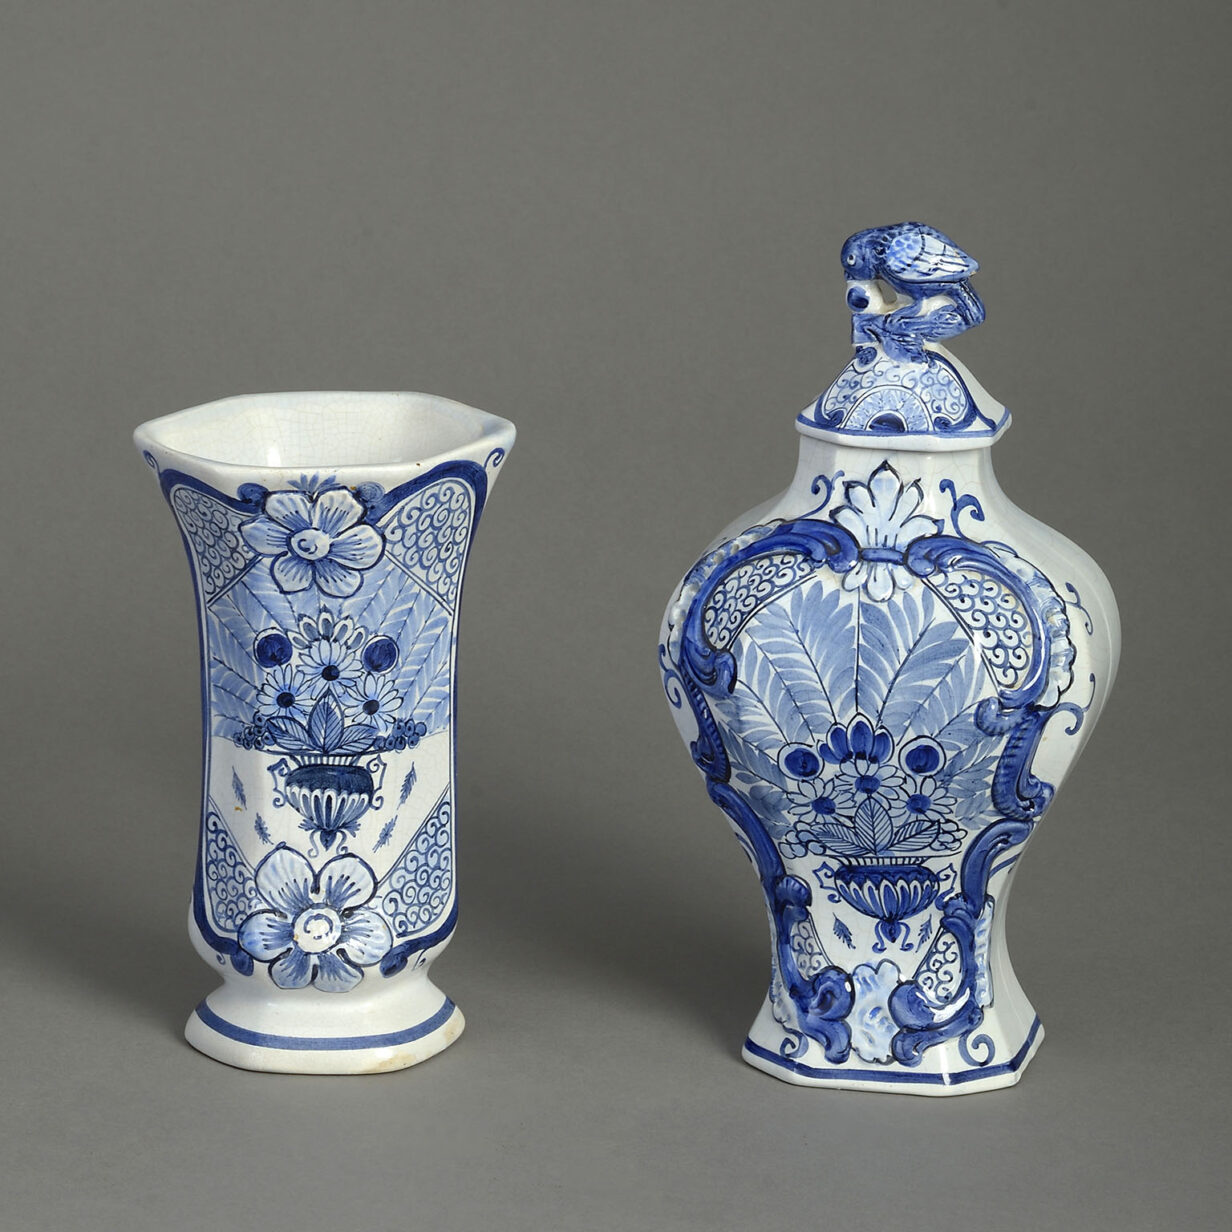 Garniture of Five Delft Vases